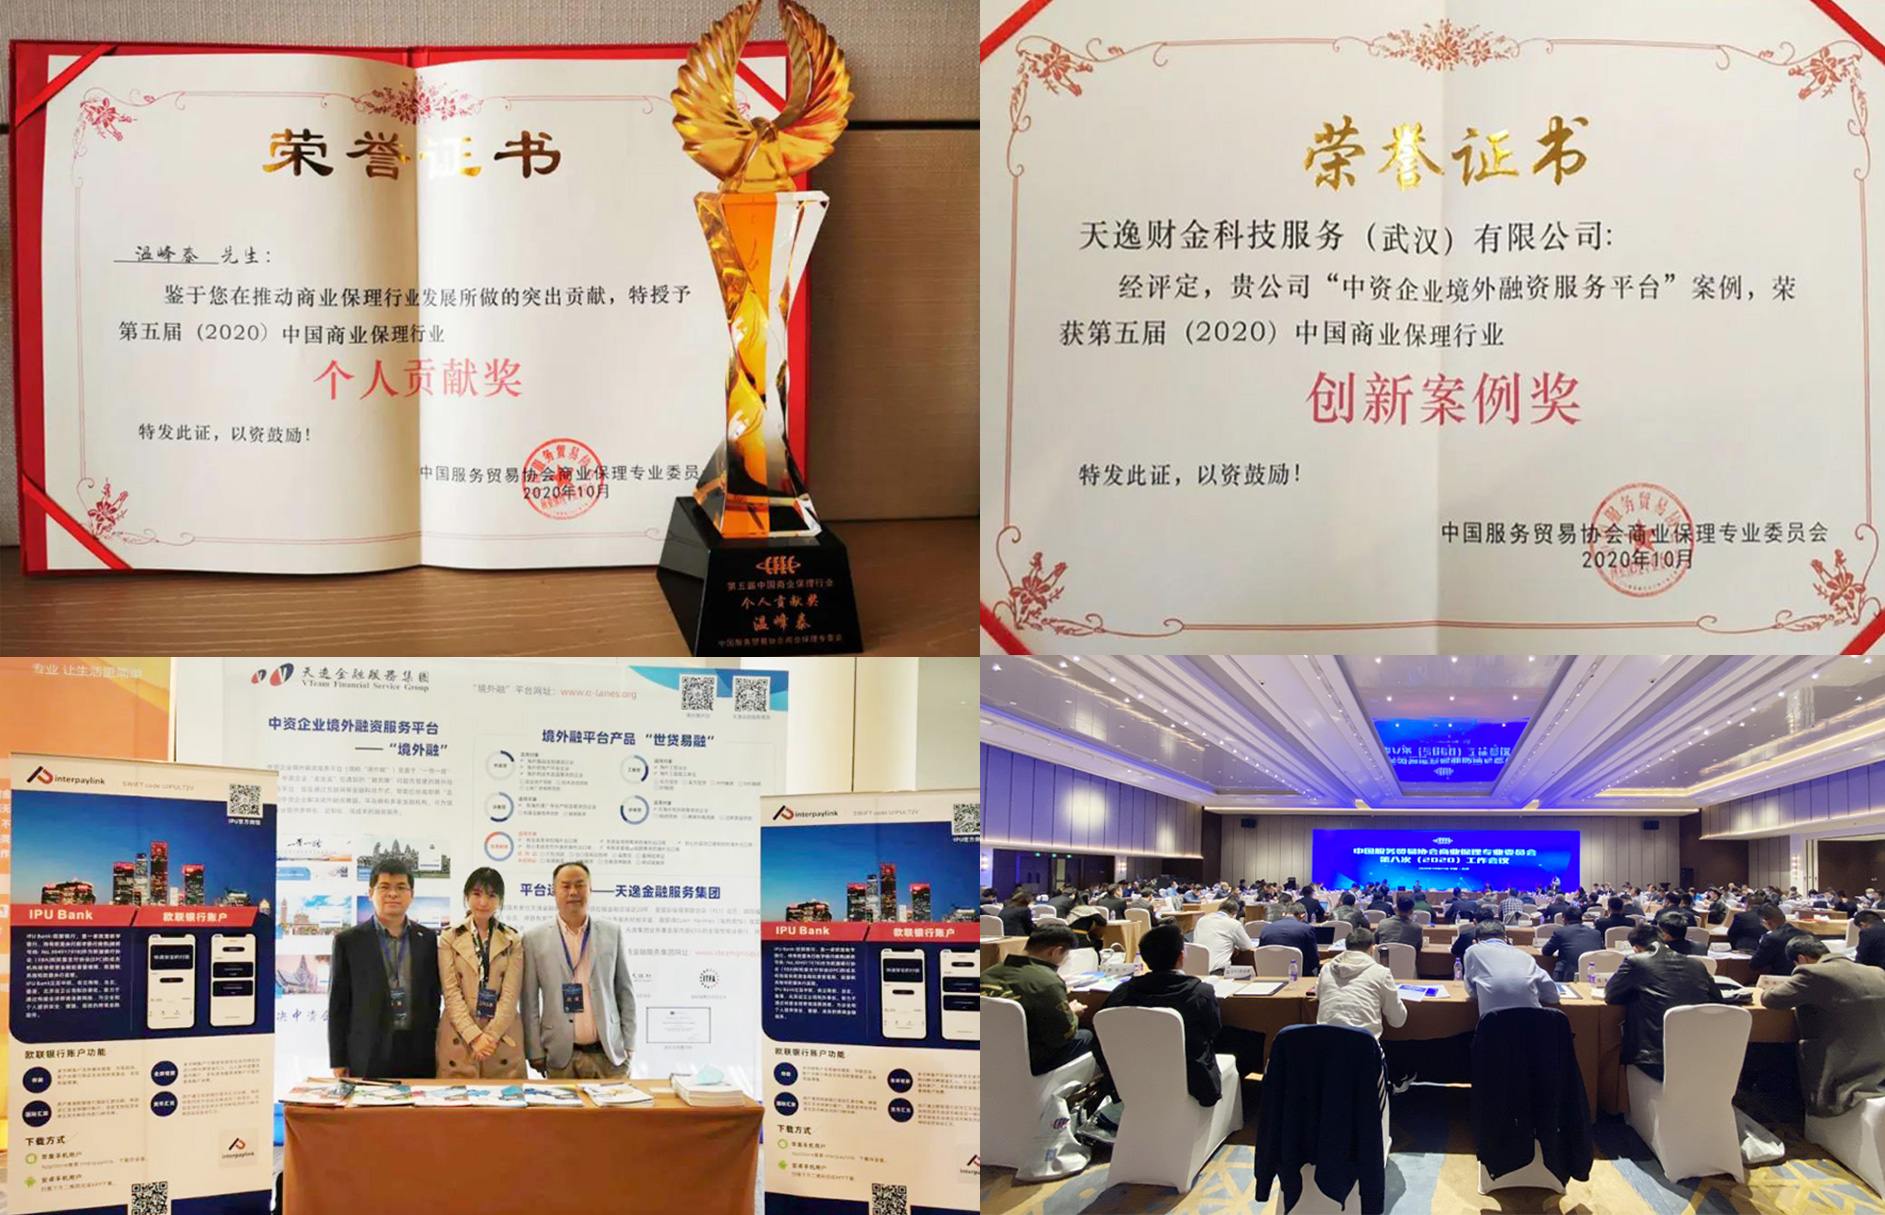 天逸金融服务集团荣获第五届中国商业保理行业峰会颁发双奖肯定